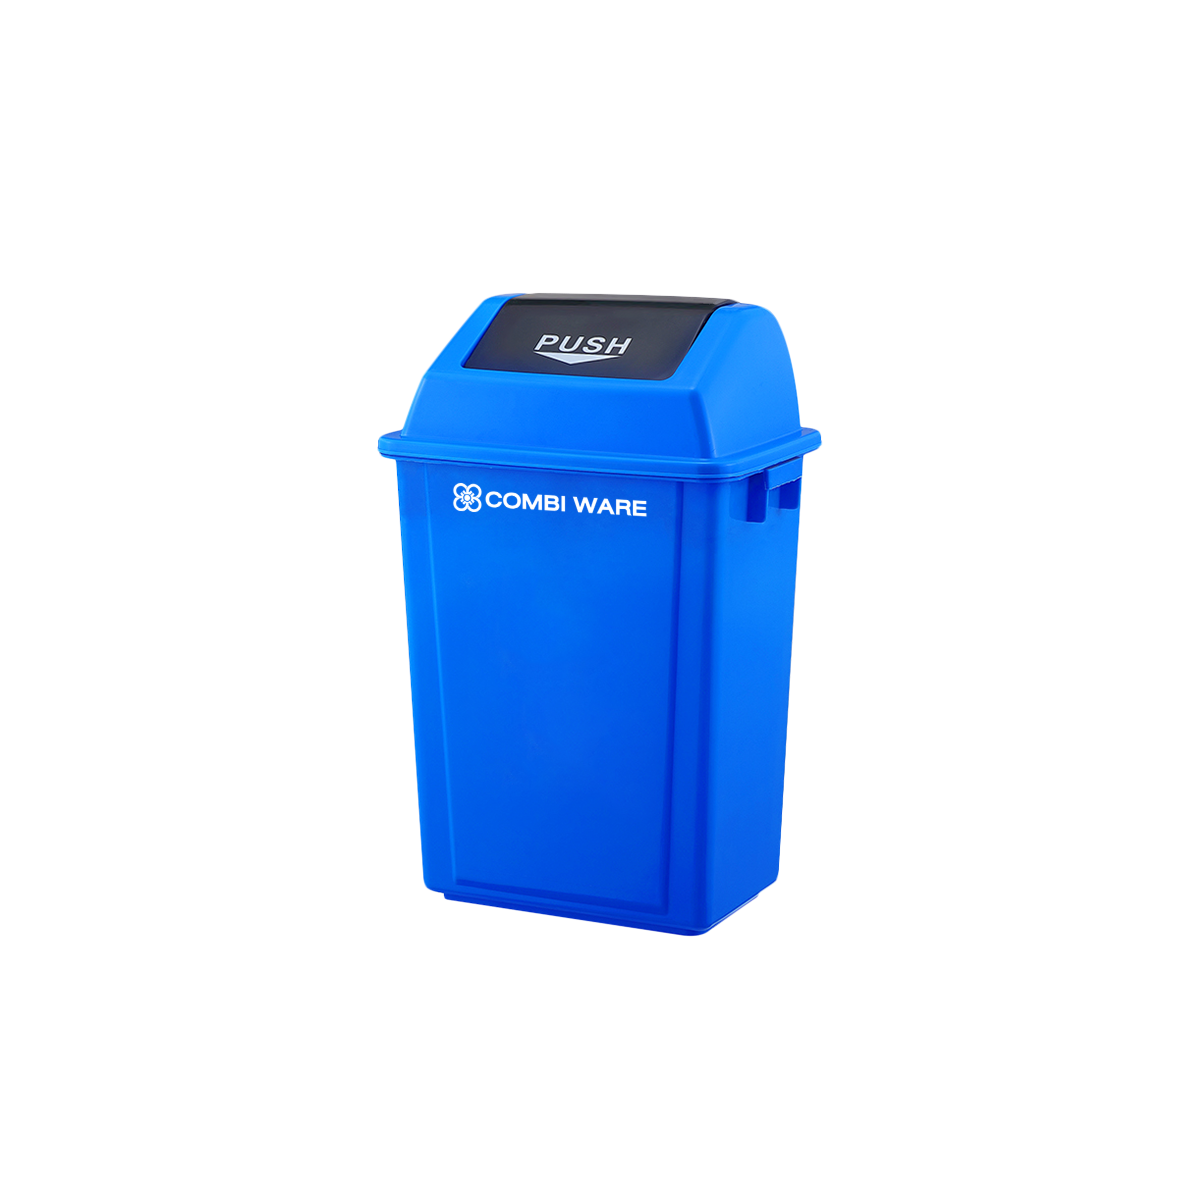 ถังขยะพลาสติก ขนาด 20 ลิตร แบบฝาผลัก สีน้ำเงิน